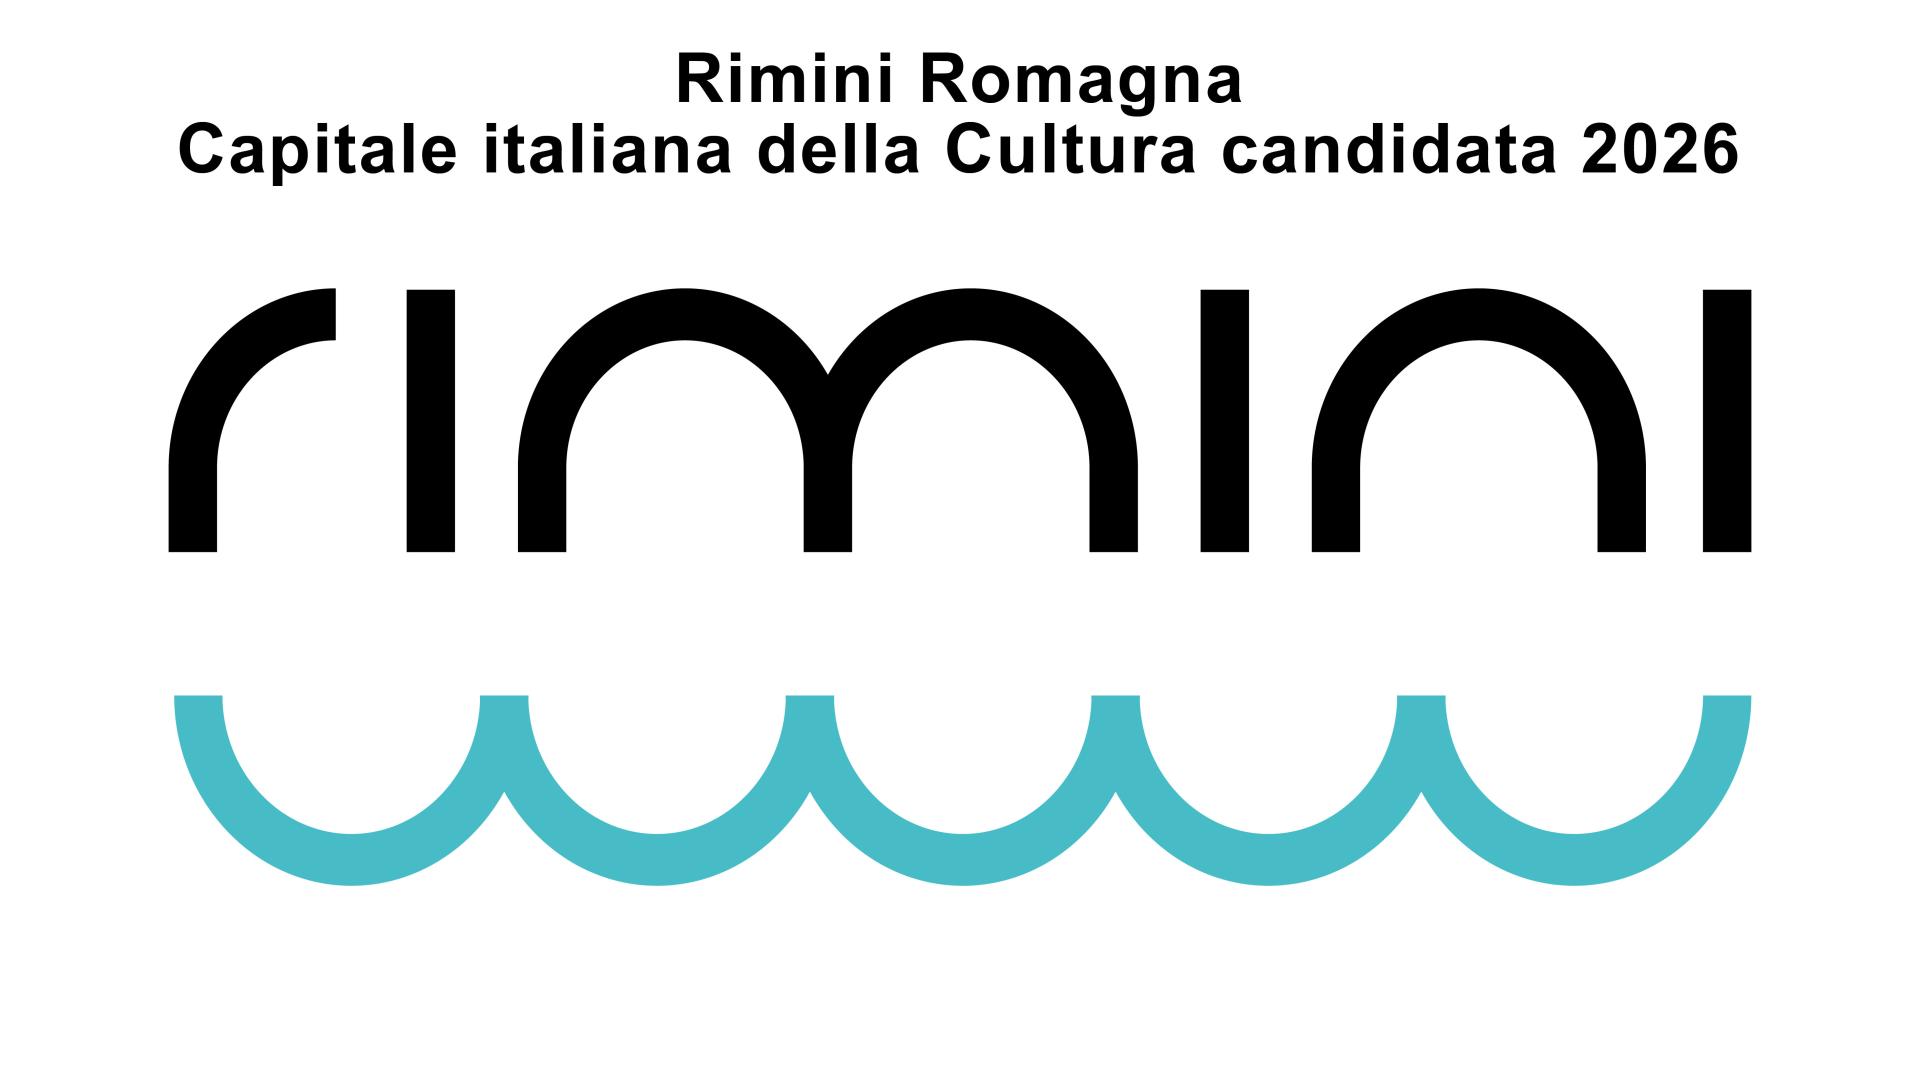 Rimini Romagna Capitale della Cultura candidata 2026